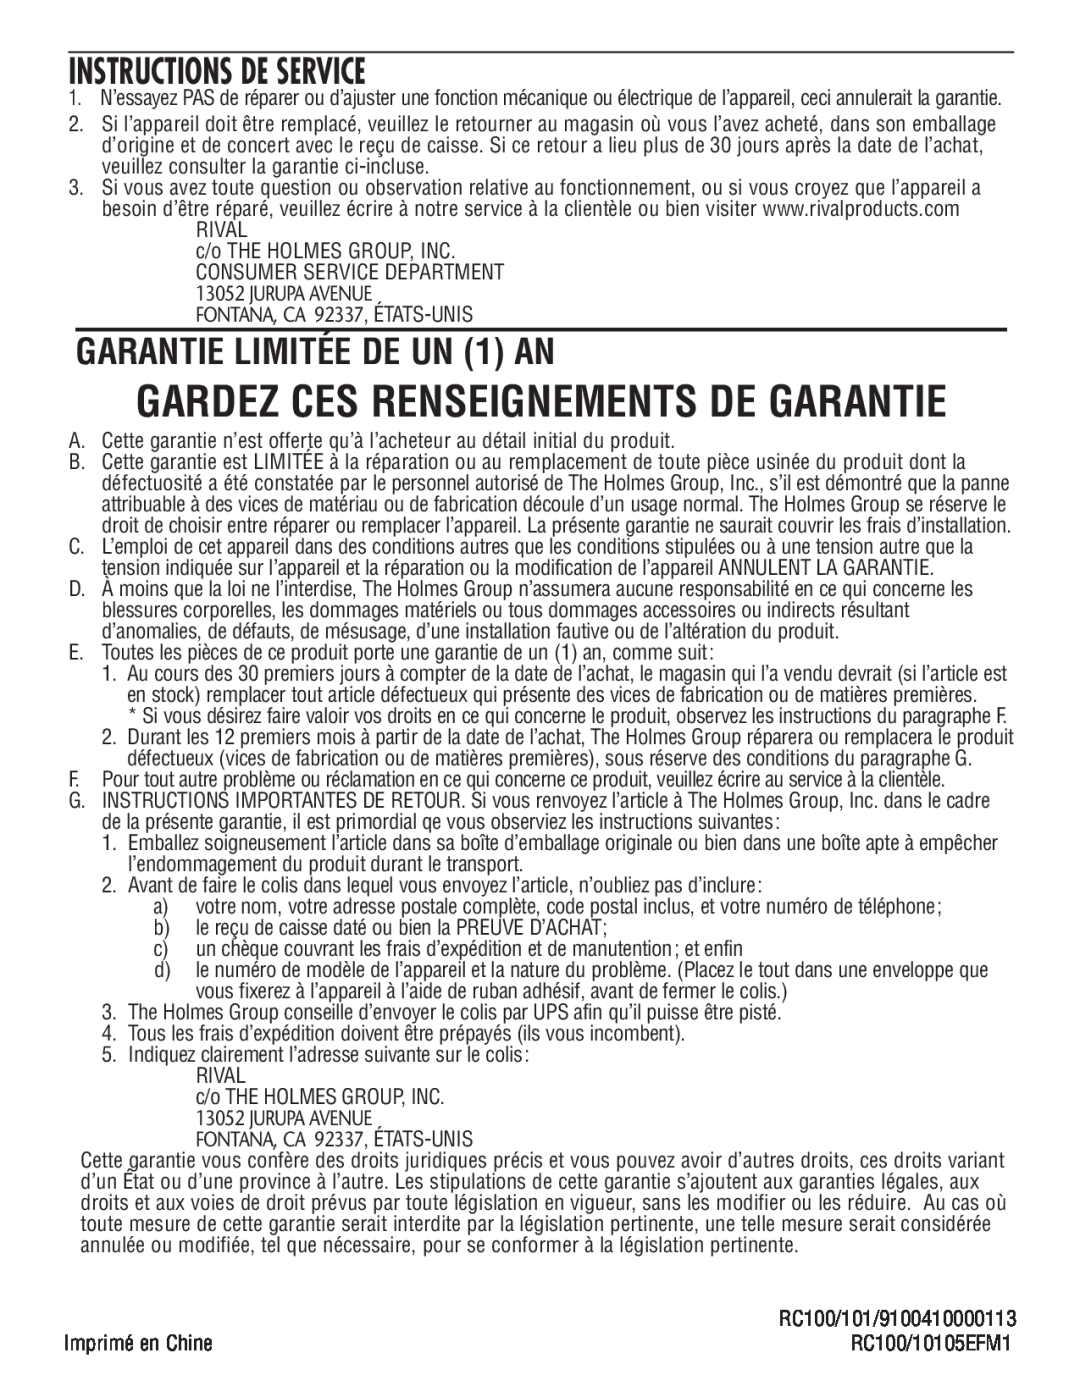 Rival RC100, RC101 manual Instructions De Service, GARANTIE LIMITÉE DE UN 1 AN, Gardez Ces Renseignements De Garantie 